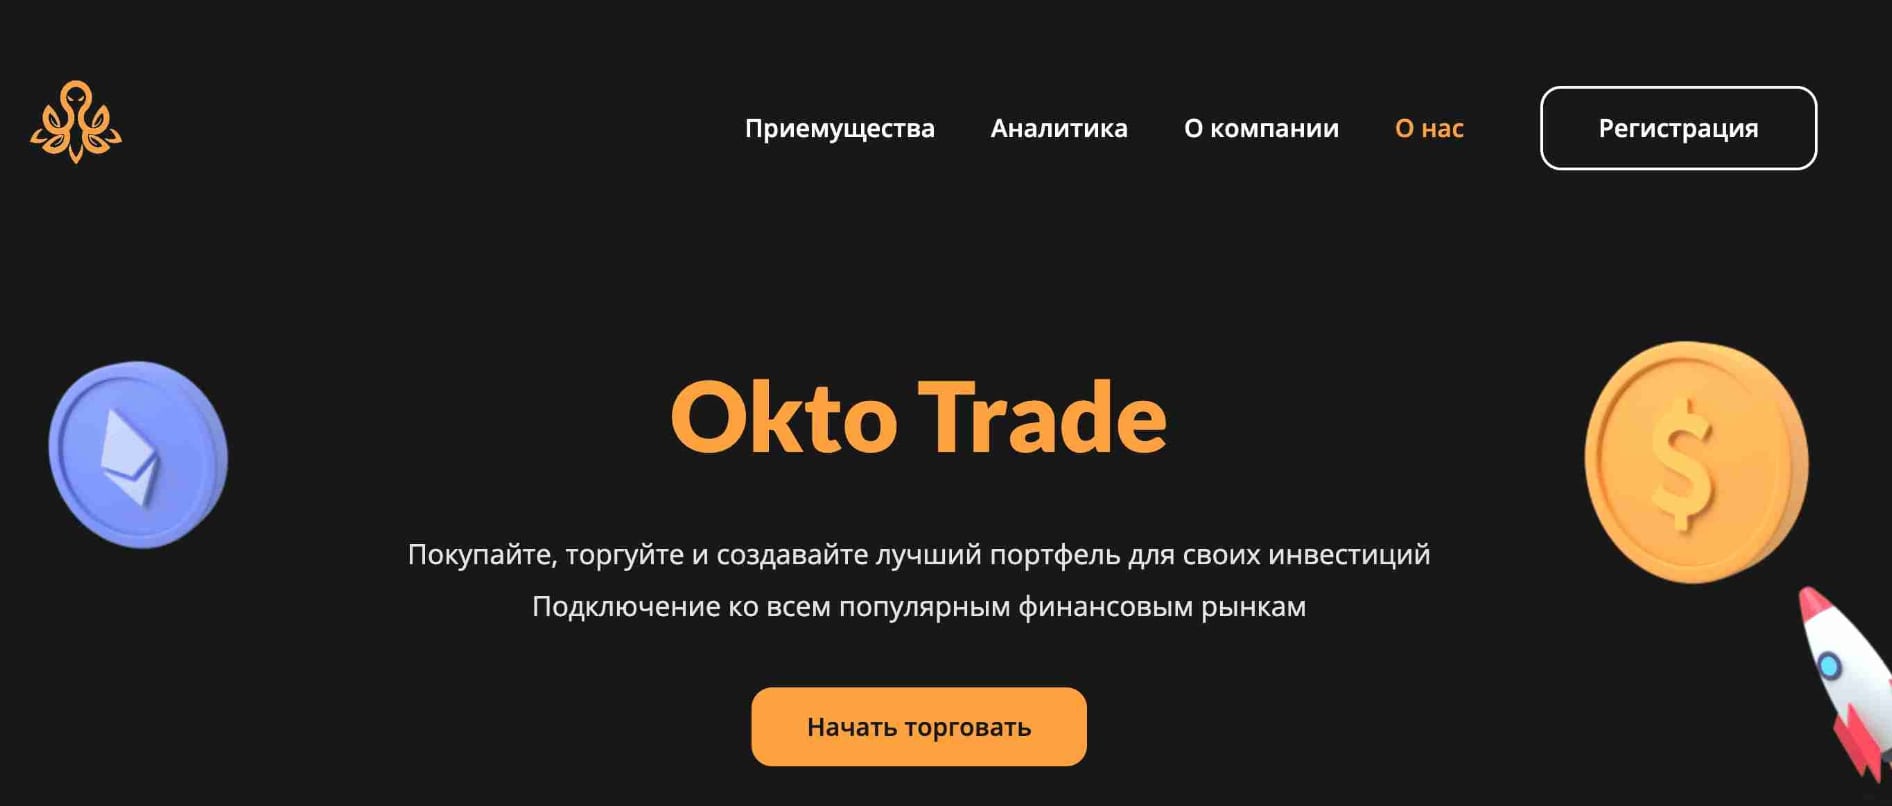 Oktotrade сайт